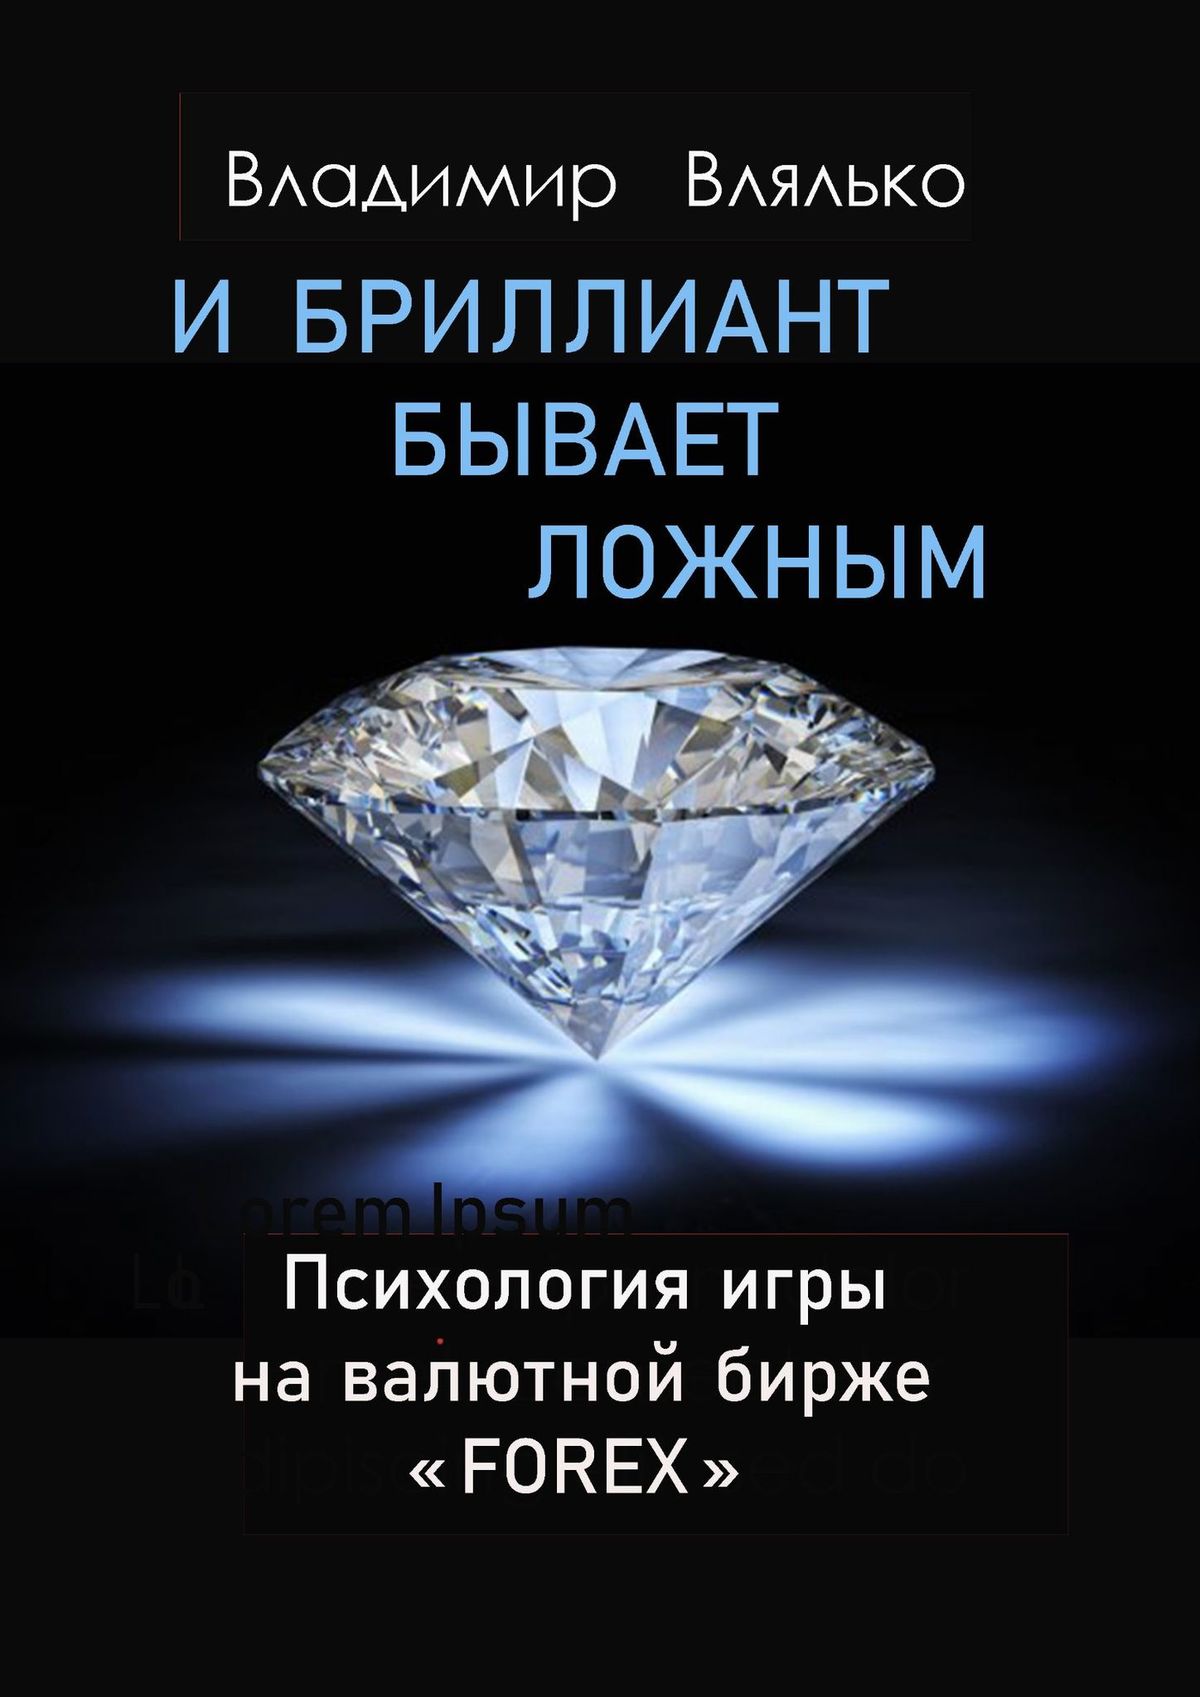 Книга  И бриллиант бывает ложным созданная Владимир Влялько может относится к жанру просто о бизнесе. Стоимость электронной книги И бриллиант бывает ложным с идентификатором 66487820 составляет 160.00 руб.